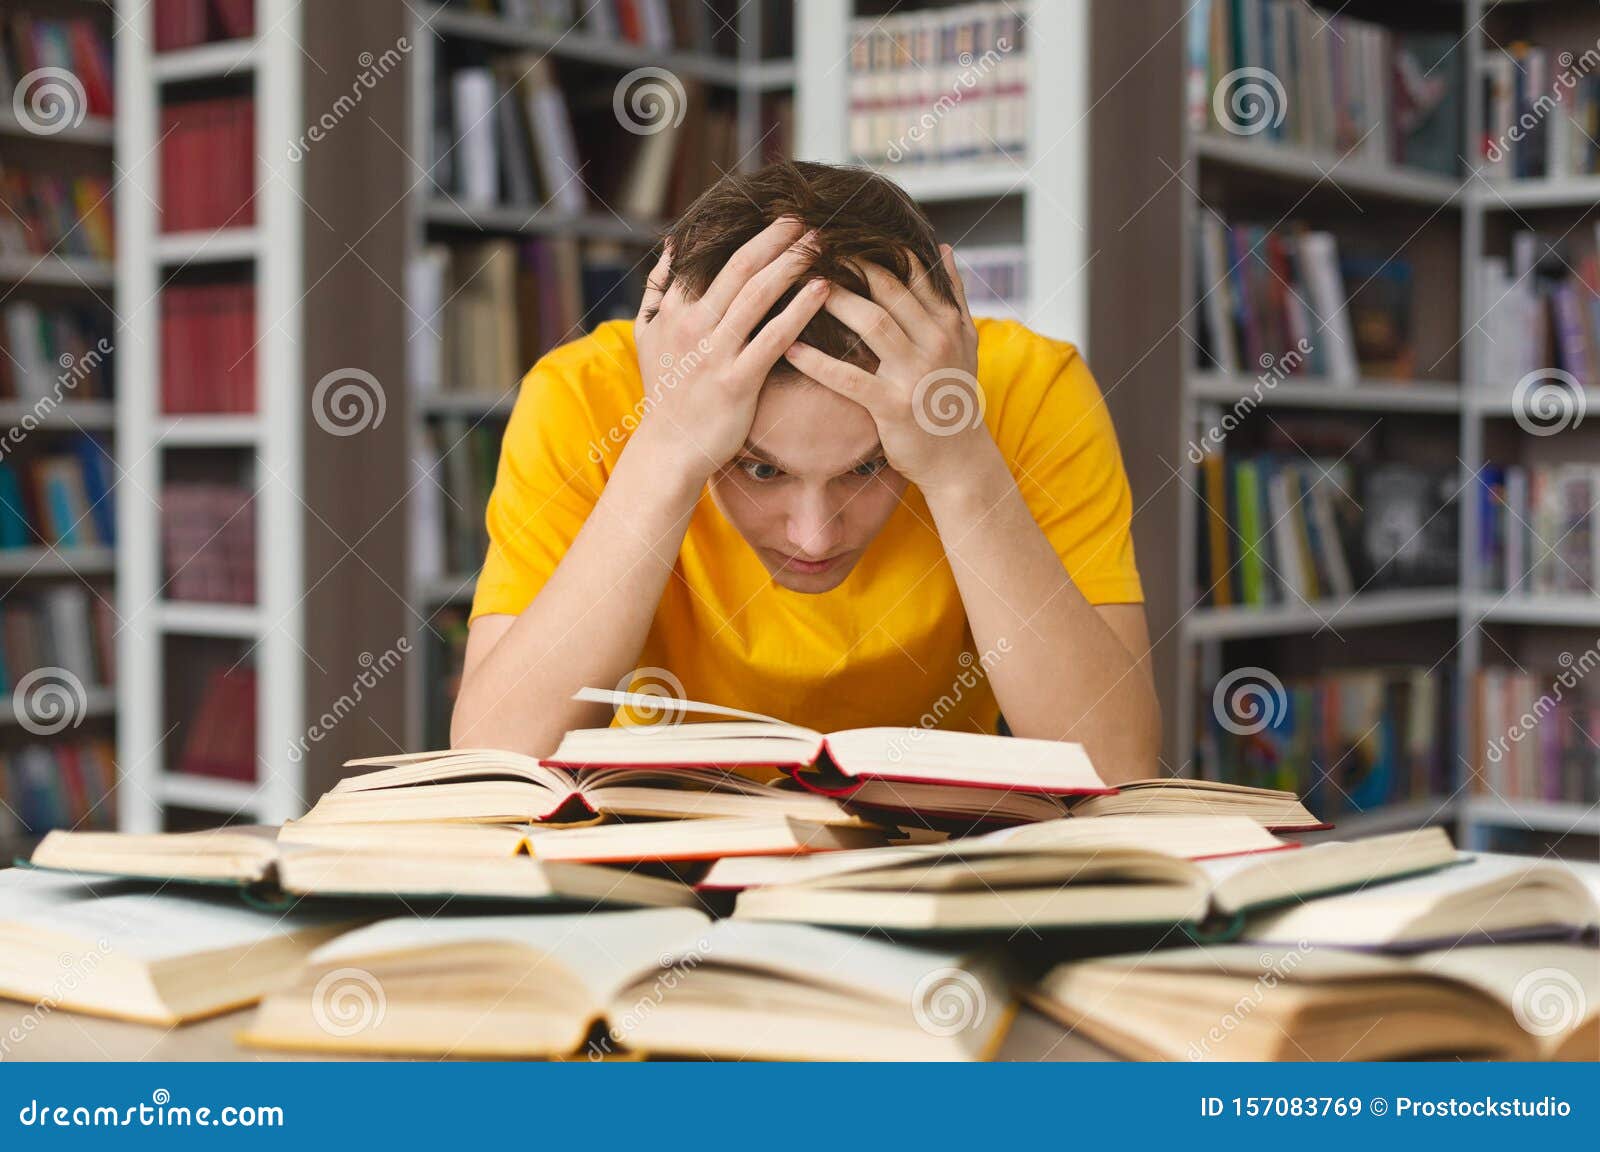 Устал читать. Замученный студент. Девушка среди книг. Ученик держится за голову. Фото замученного студента.